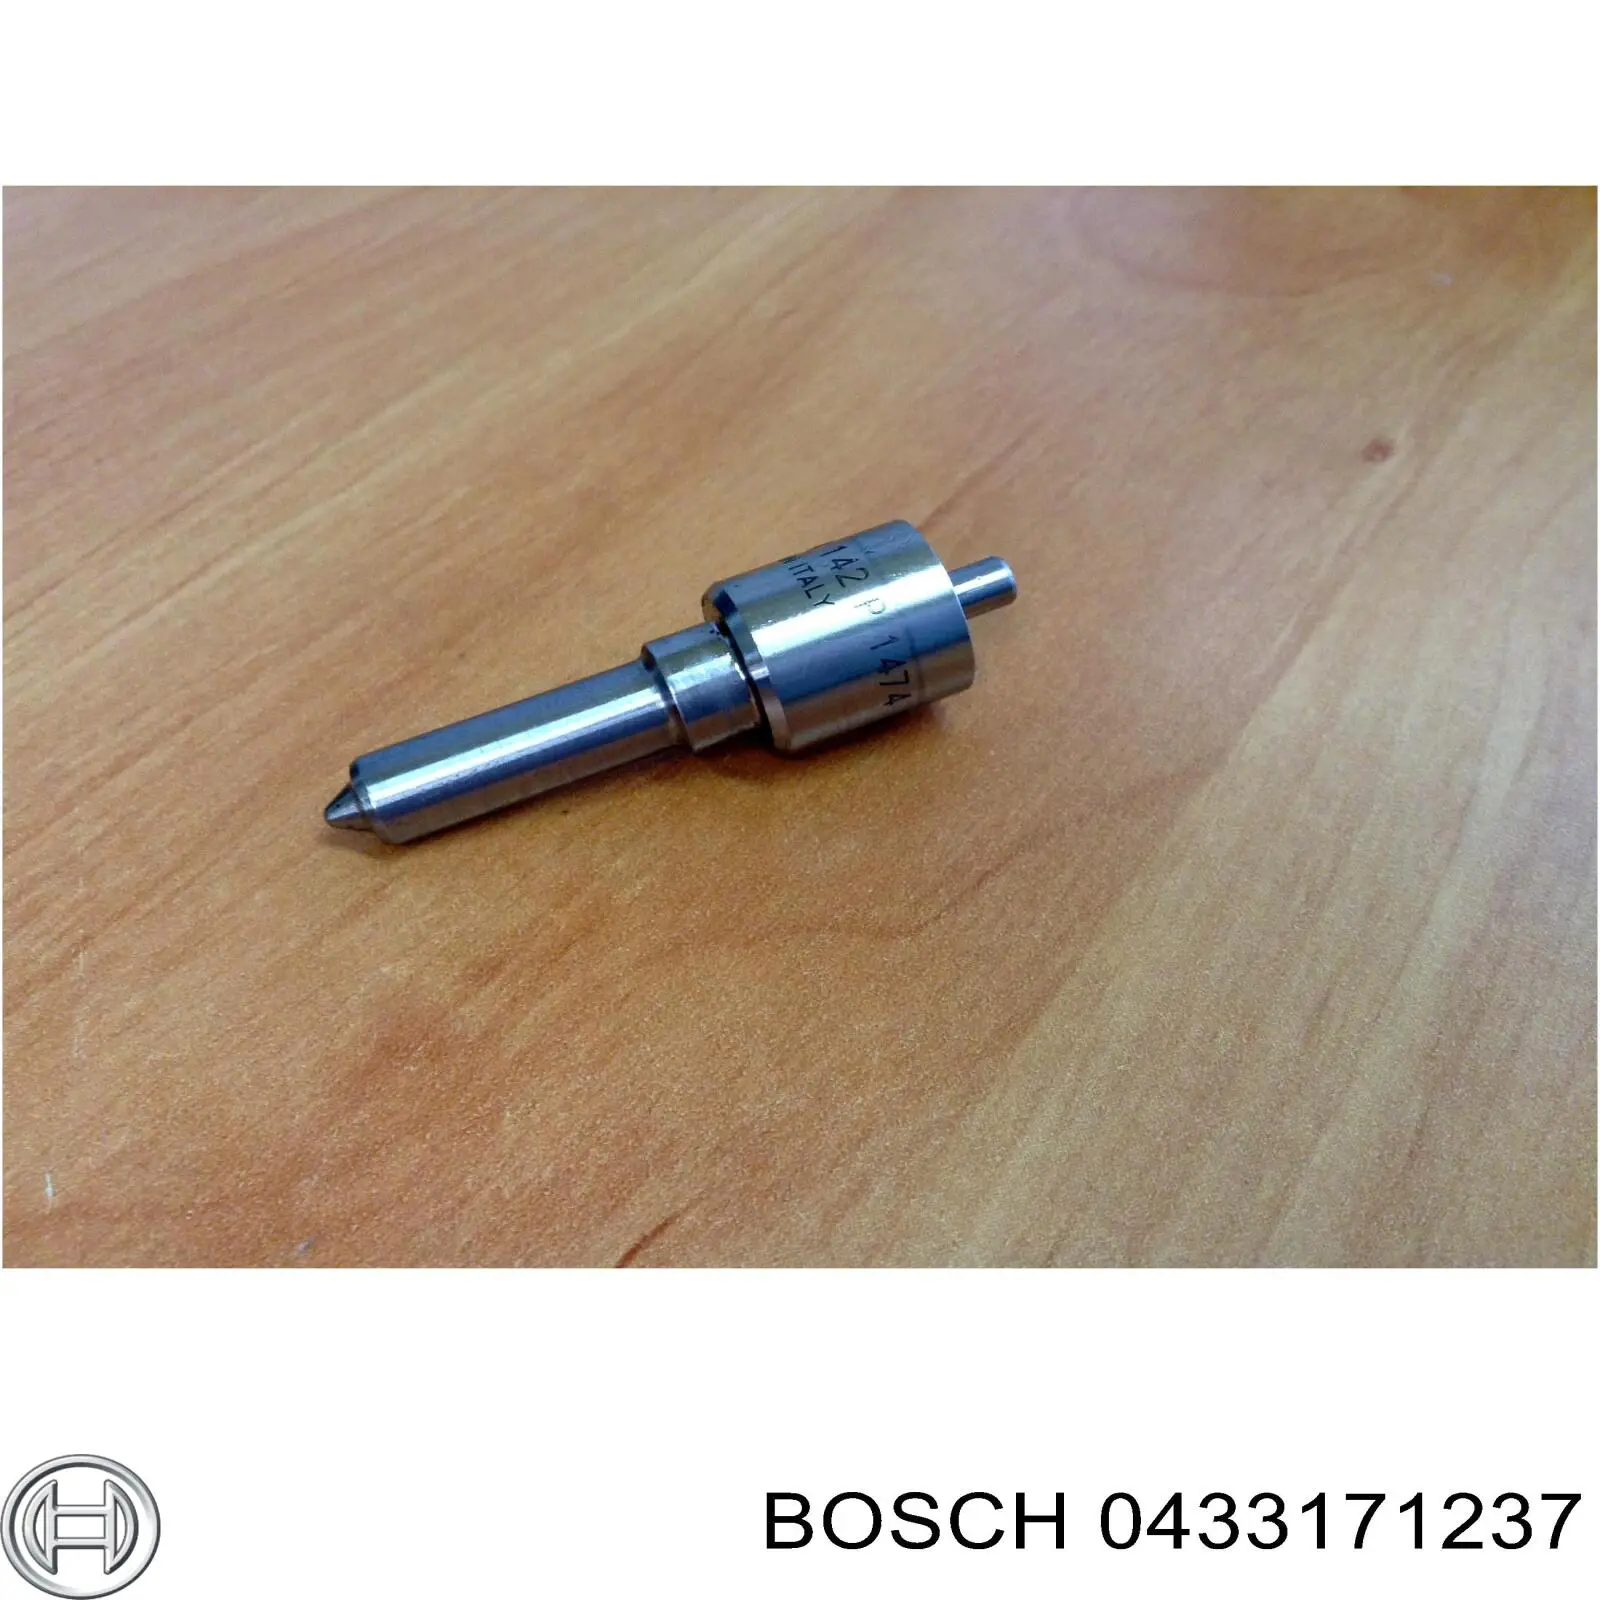 433171237 Bosch распылитель дизельной форсунки